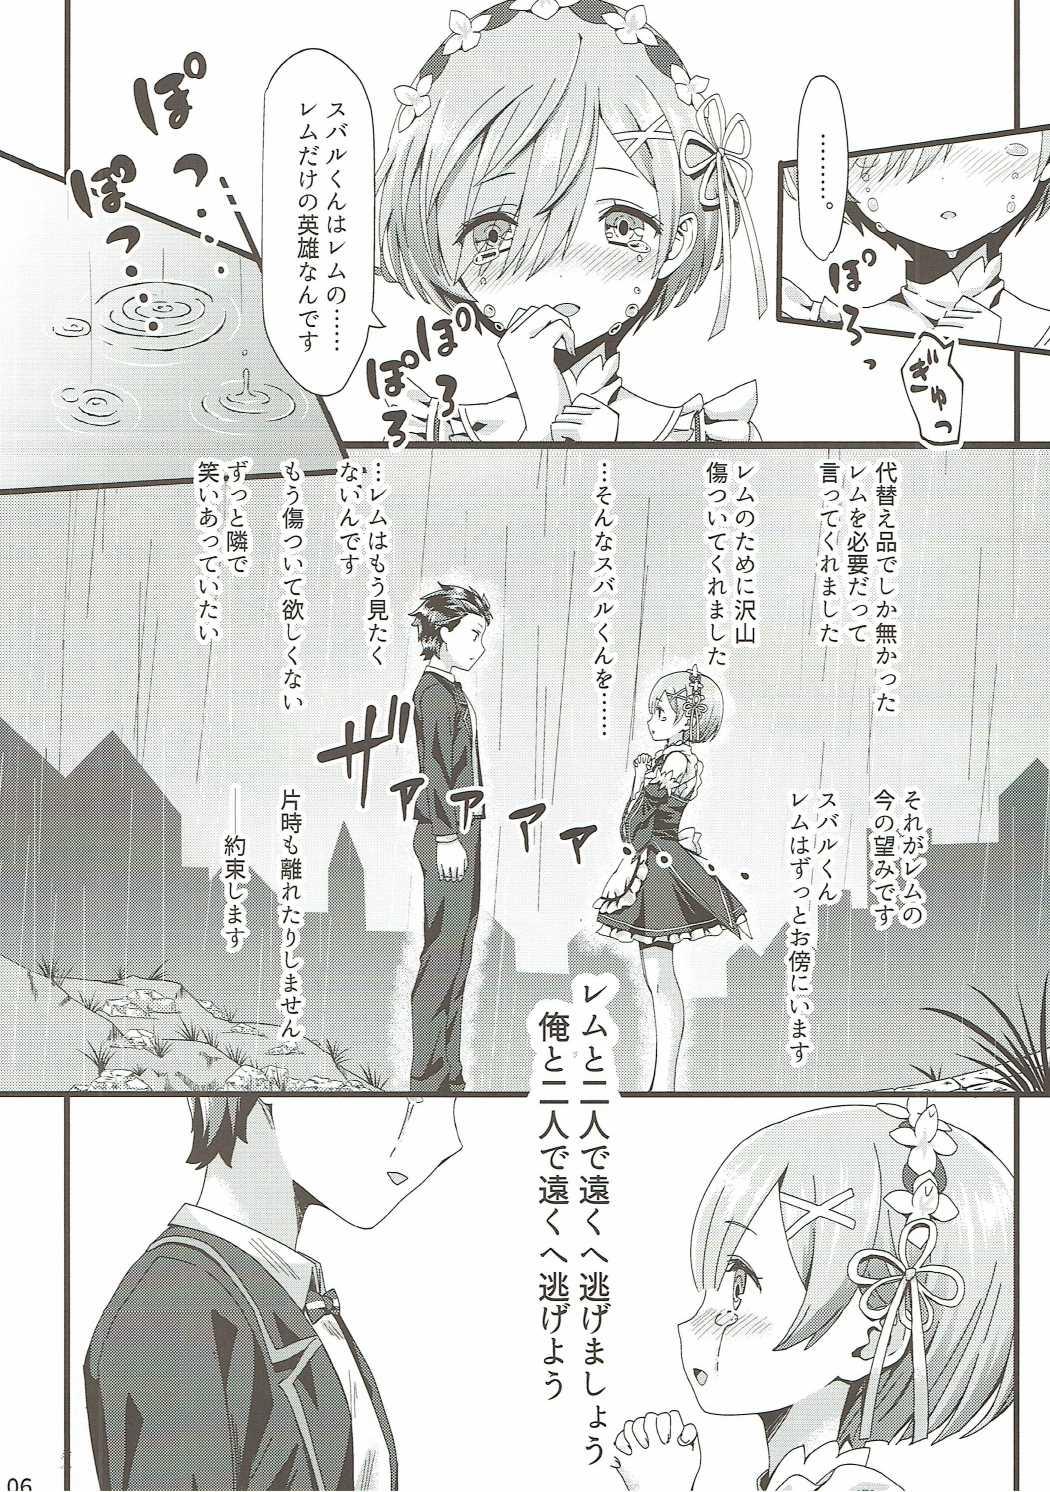 Rubbing Re: Zero Kara Hajimeru Isekai Icha Love Seikatsu - Re zero kara hajimeru isekai seikatsu Village - Page 5